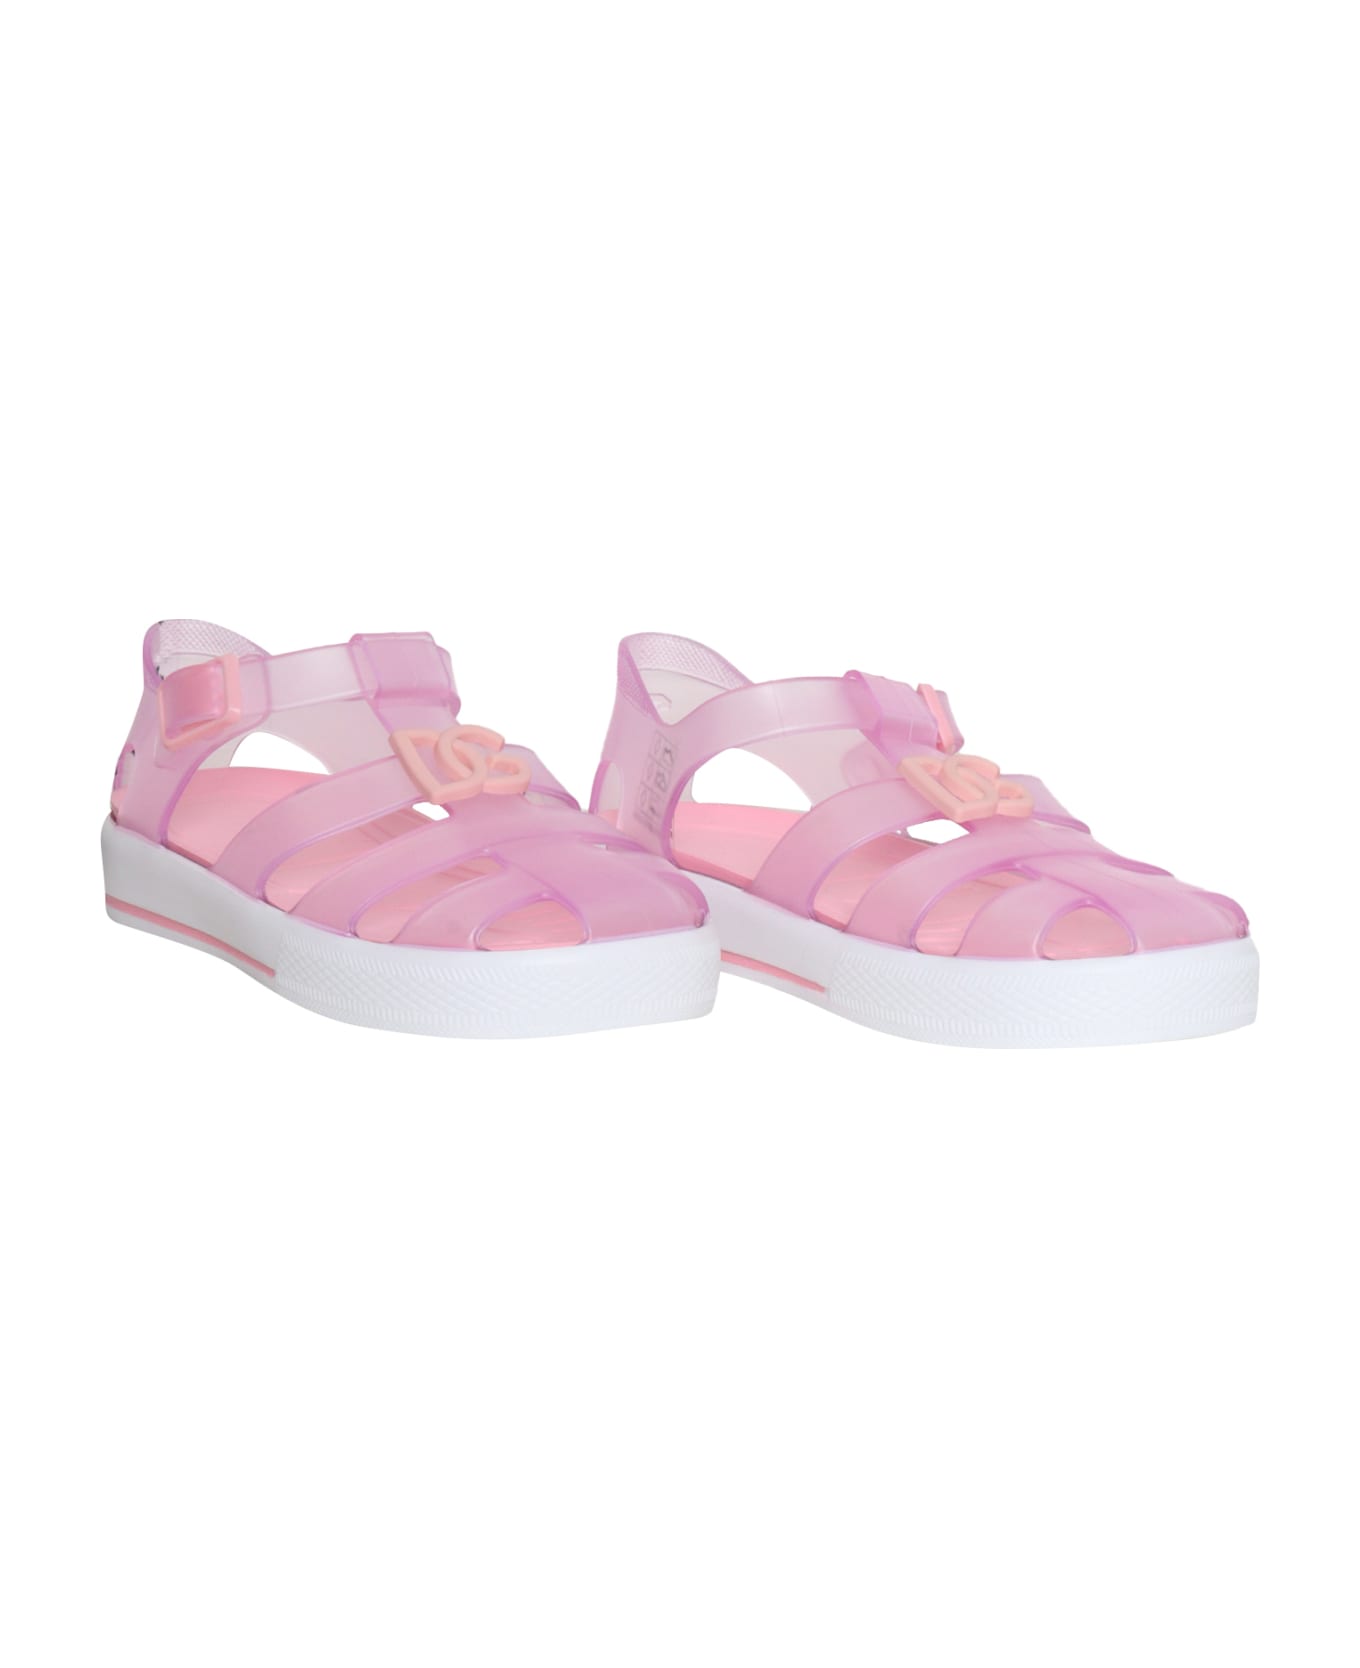 Dolce & Gabbana Pink Spider Sandals - PINK